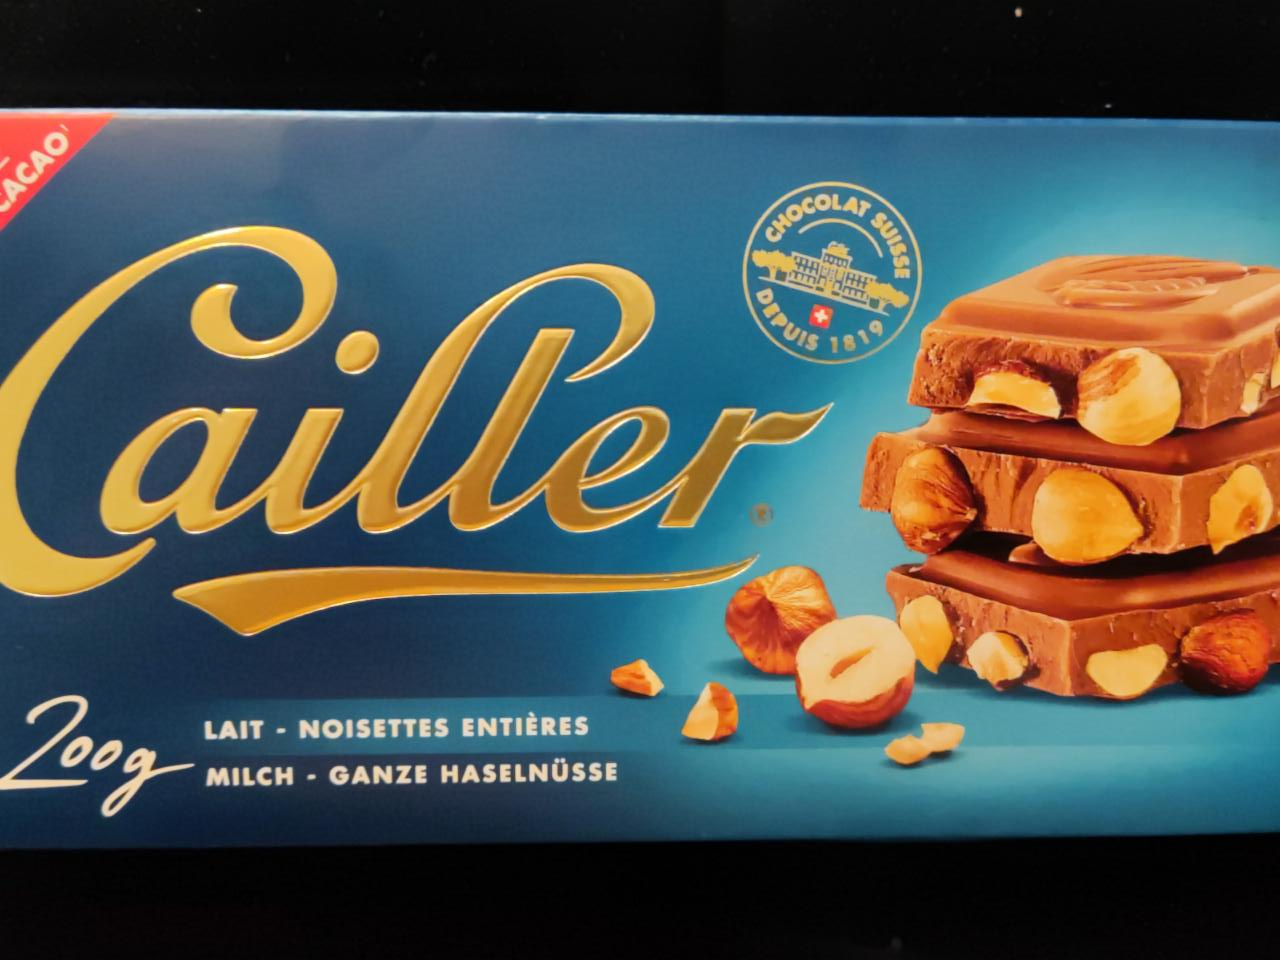 Fotografie - Cailler chocolate lait - noisettes